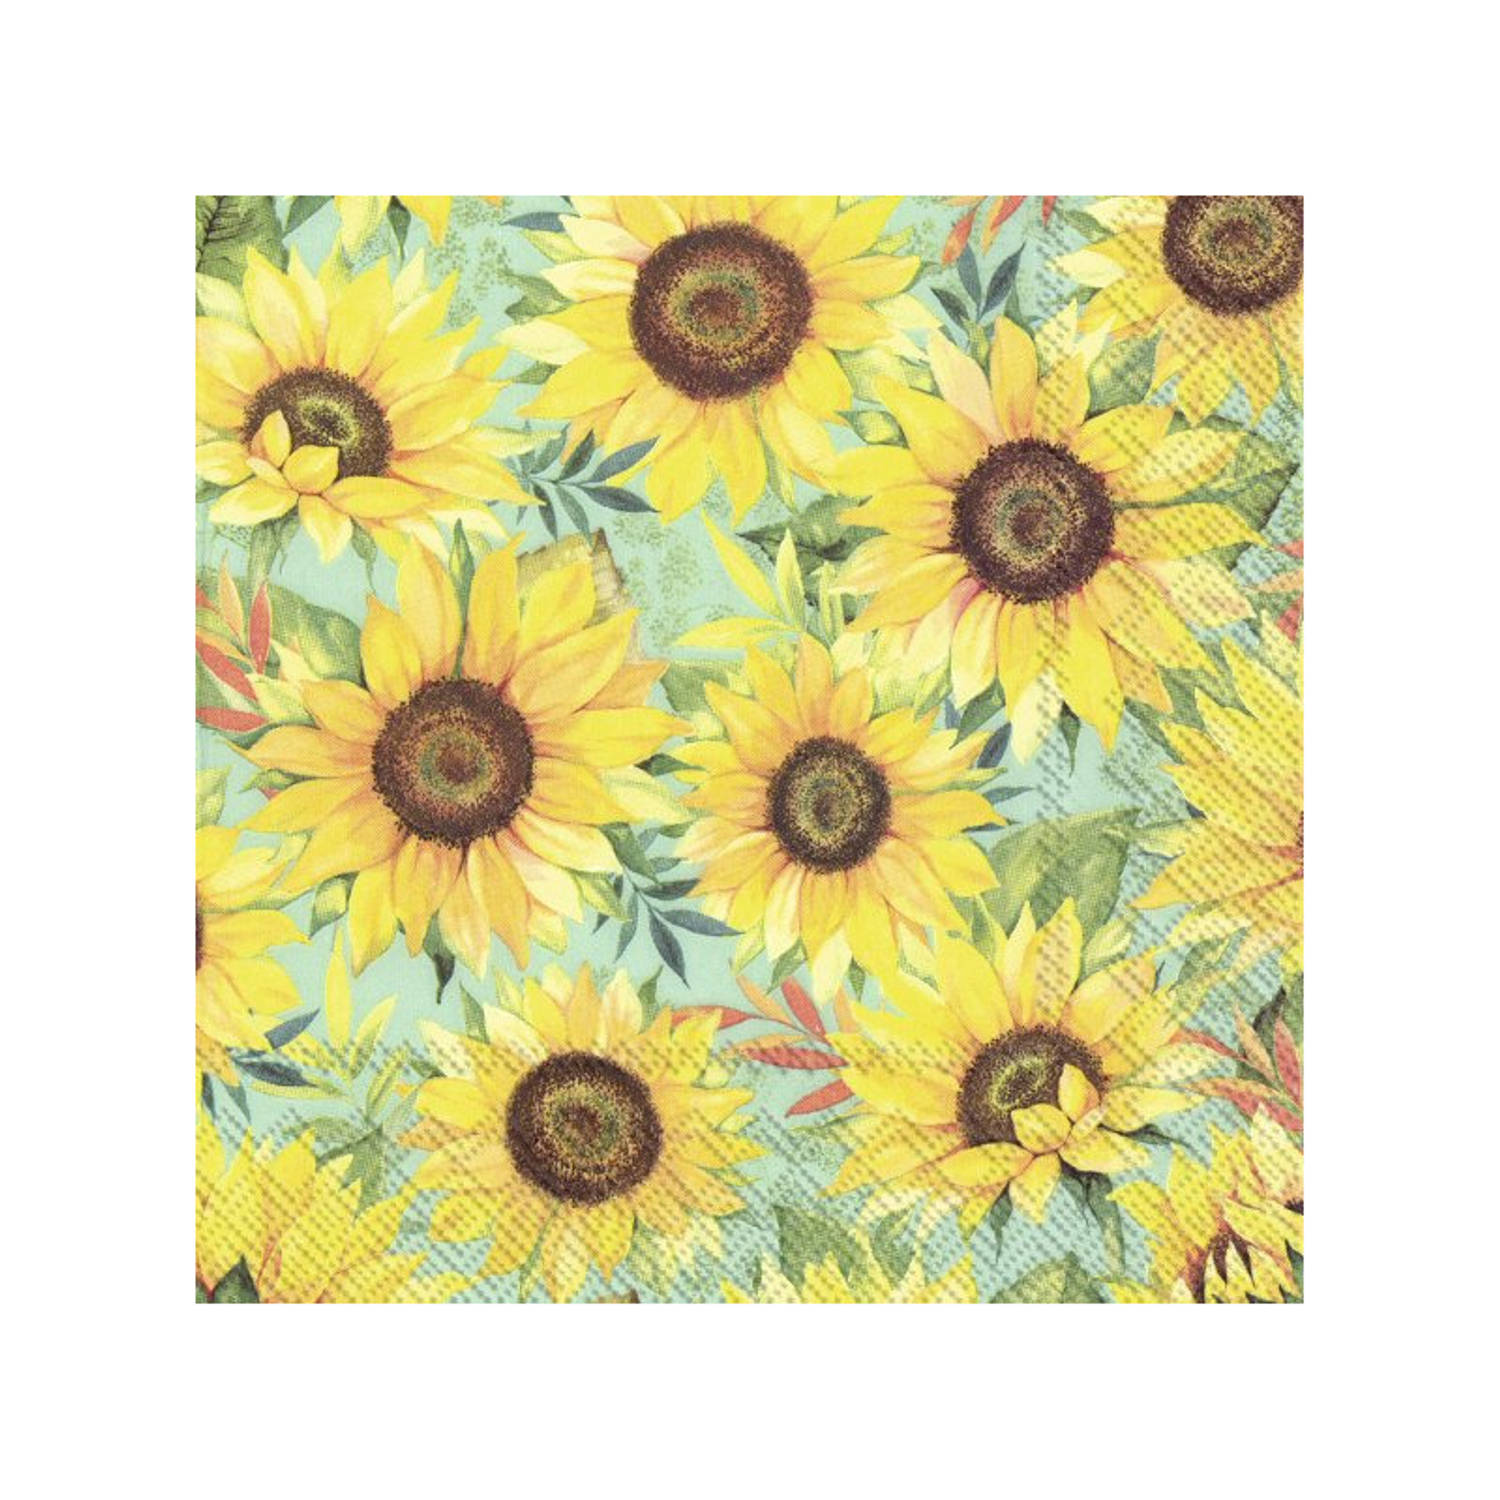 20x Gele 3-laags servetten zonnebloemen 33 x 33 cm - Vincent van Gogh kunst thema